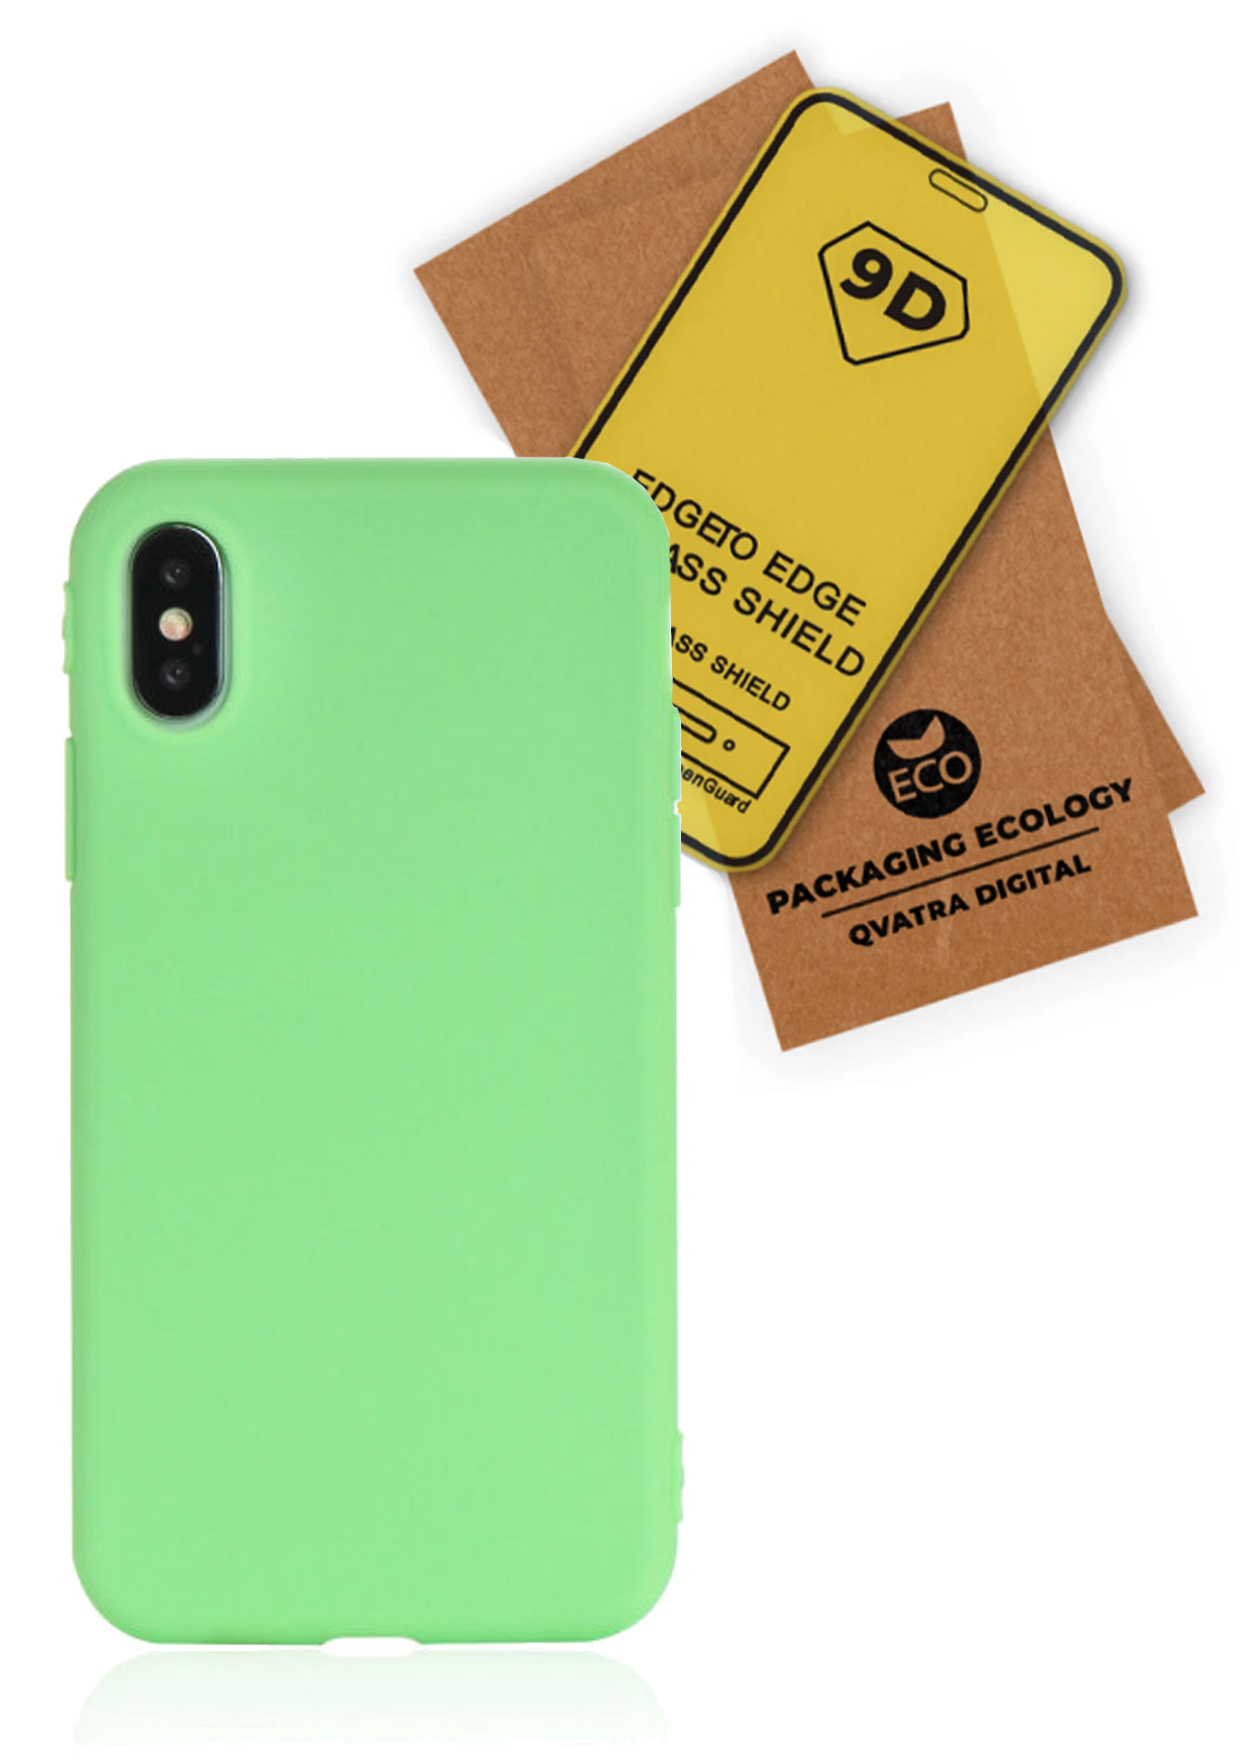 фото Чехол с защитным стеклом qvatra для iphone xs max зеленый